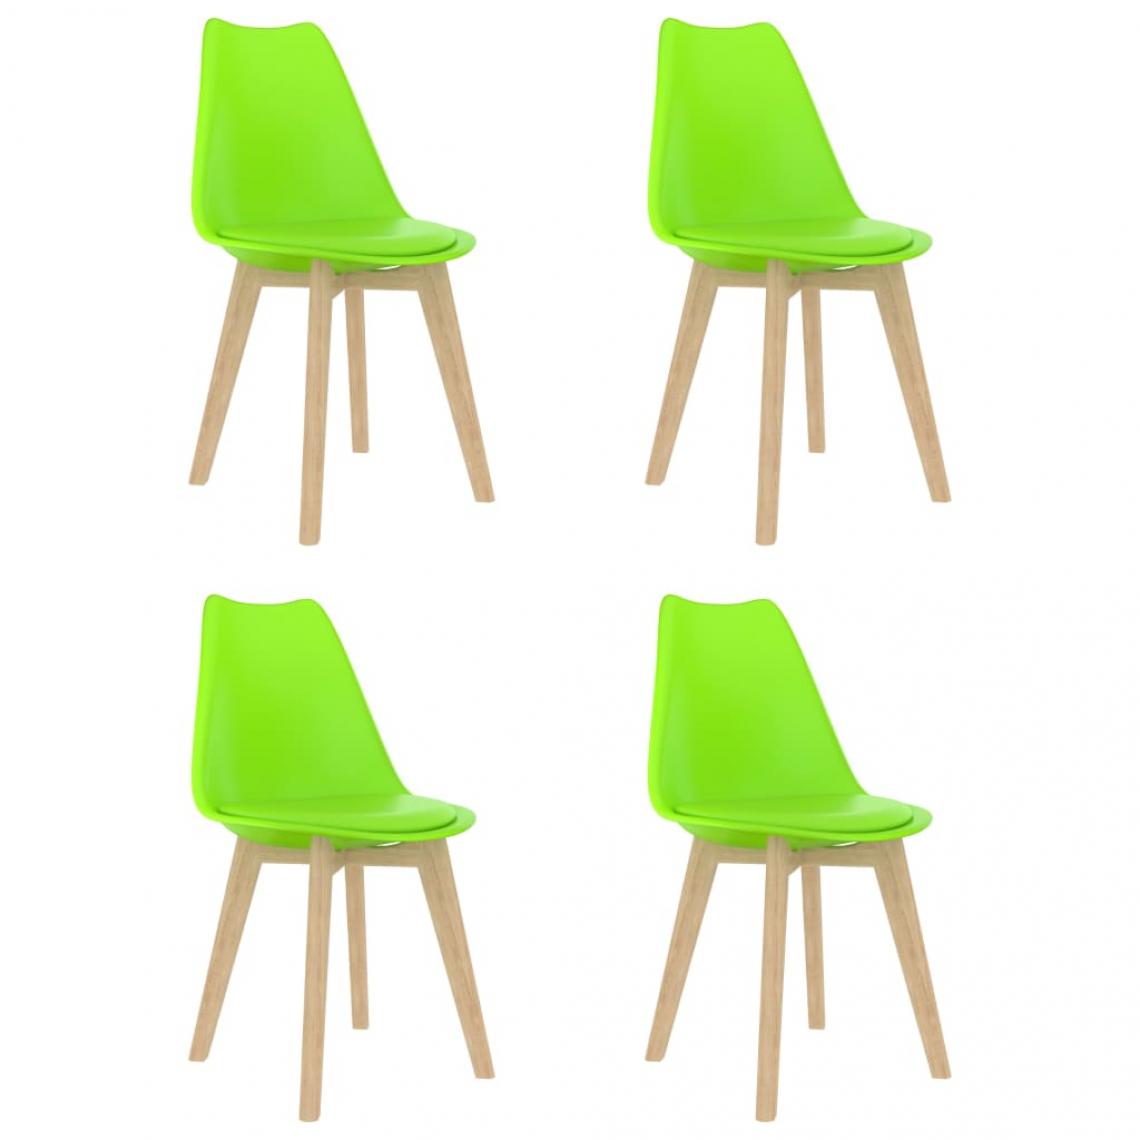 Decoshop26 - Lot de 4 chaises de salle à manger cuisine style scandinave en plastique et similicuir vert CDS022031 - Chaises